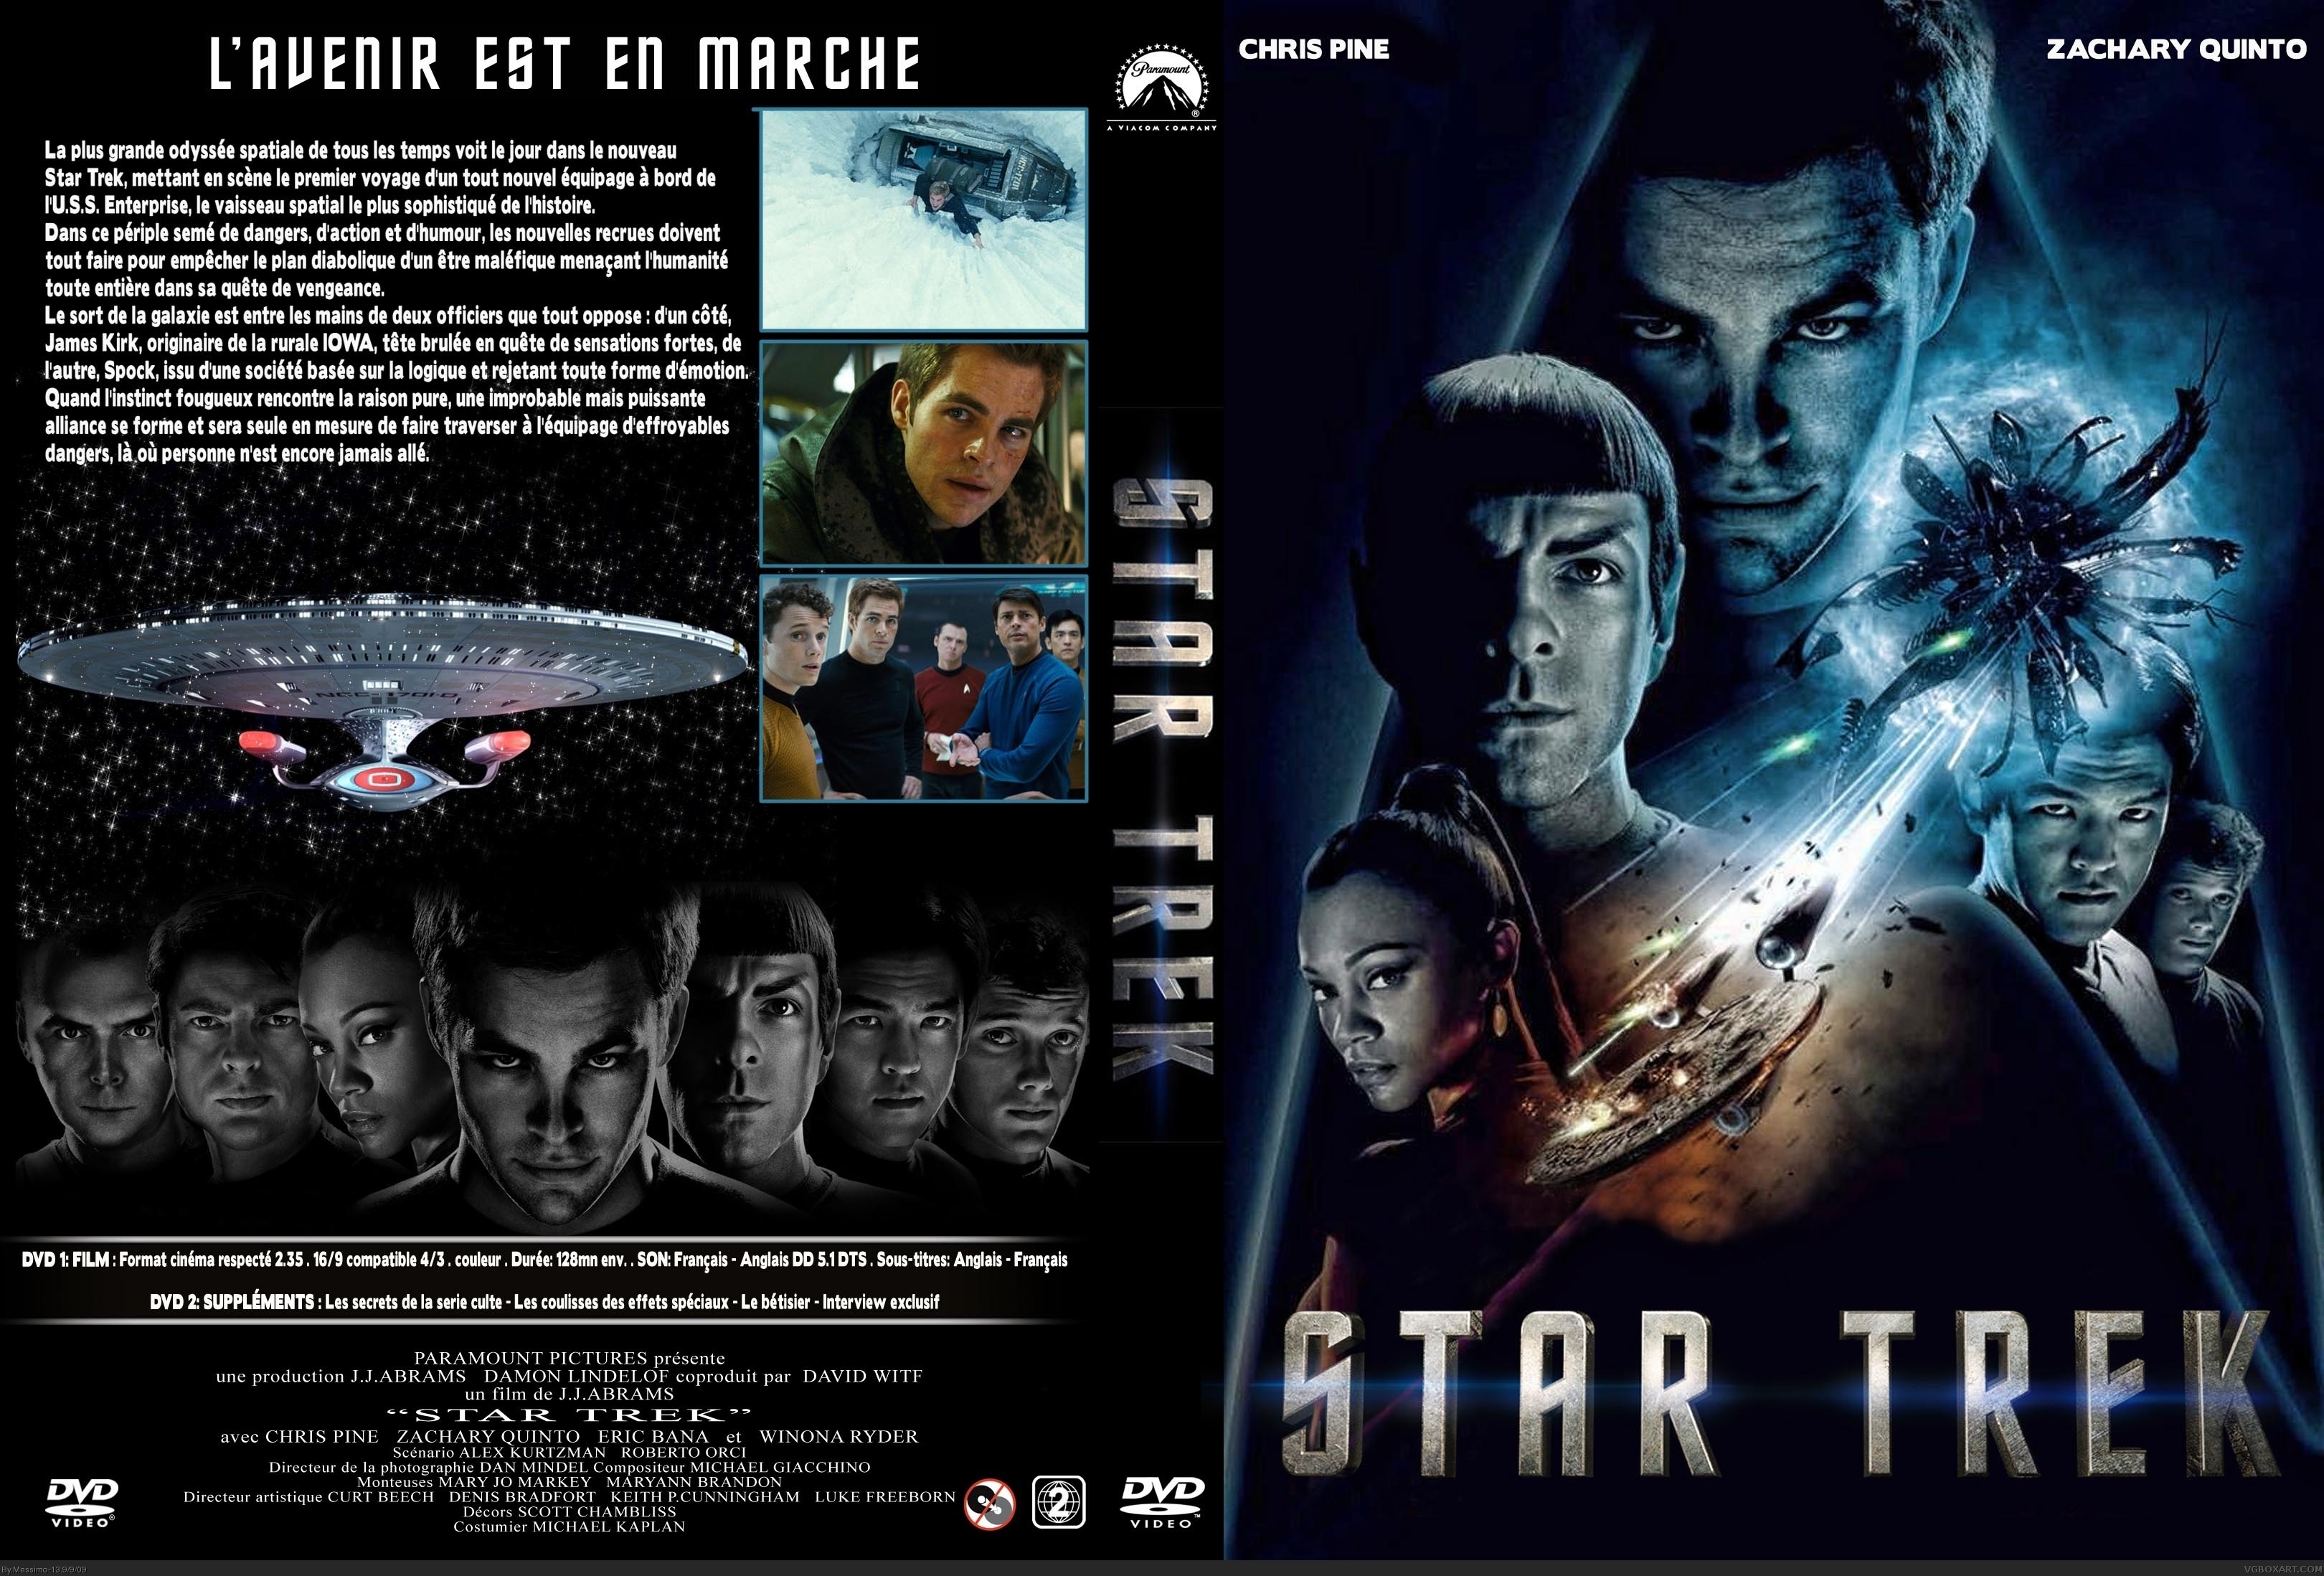 Star Trek box cover